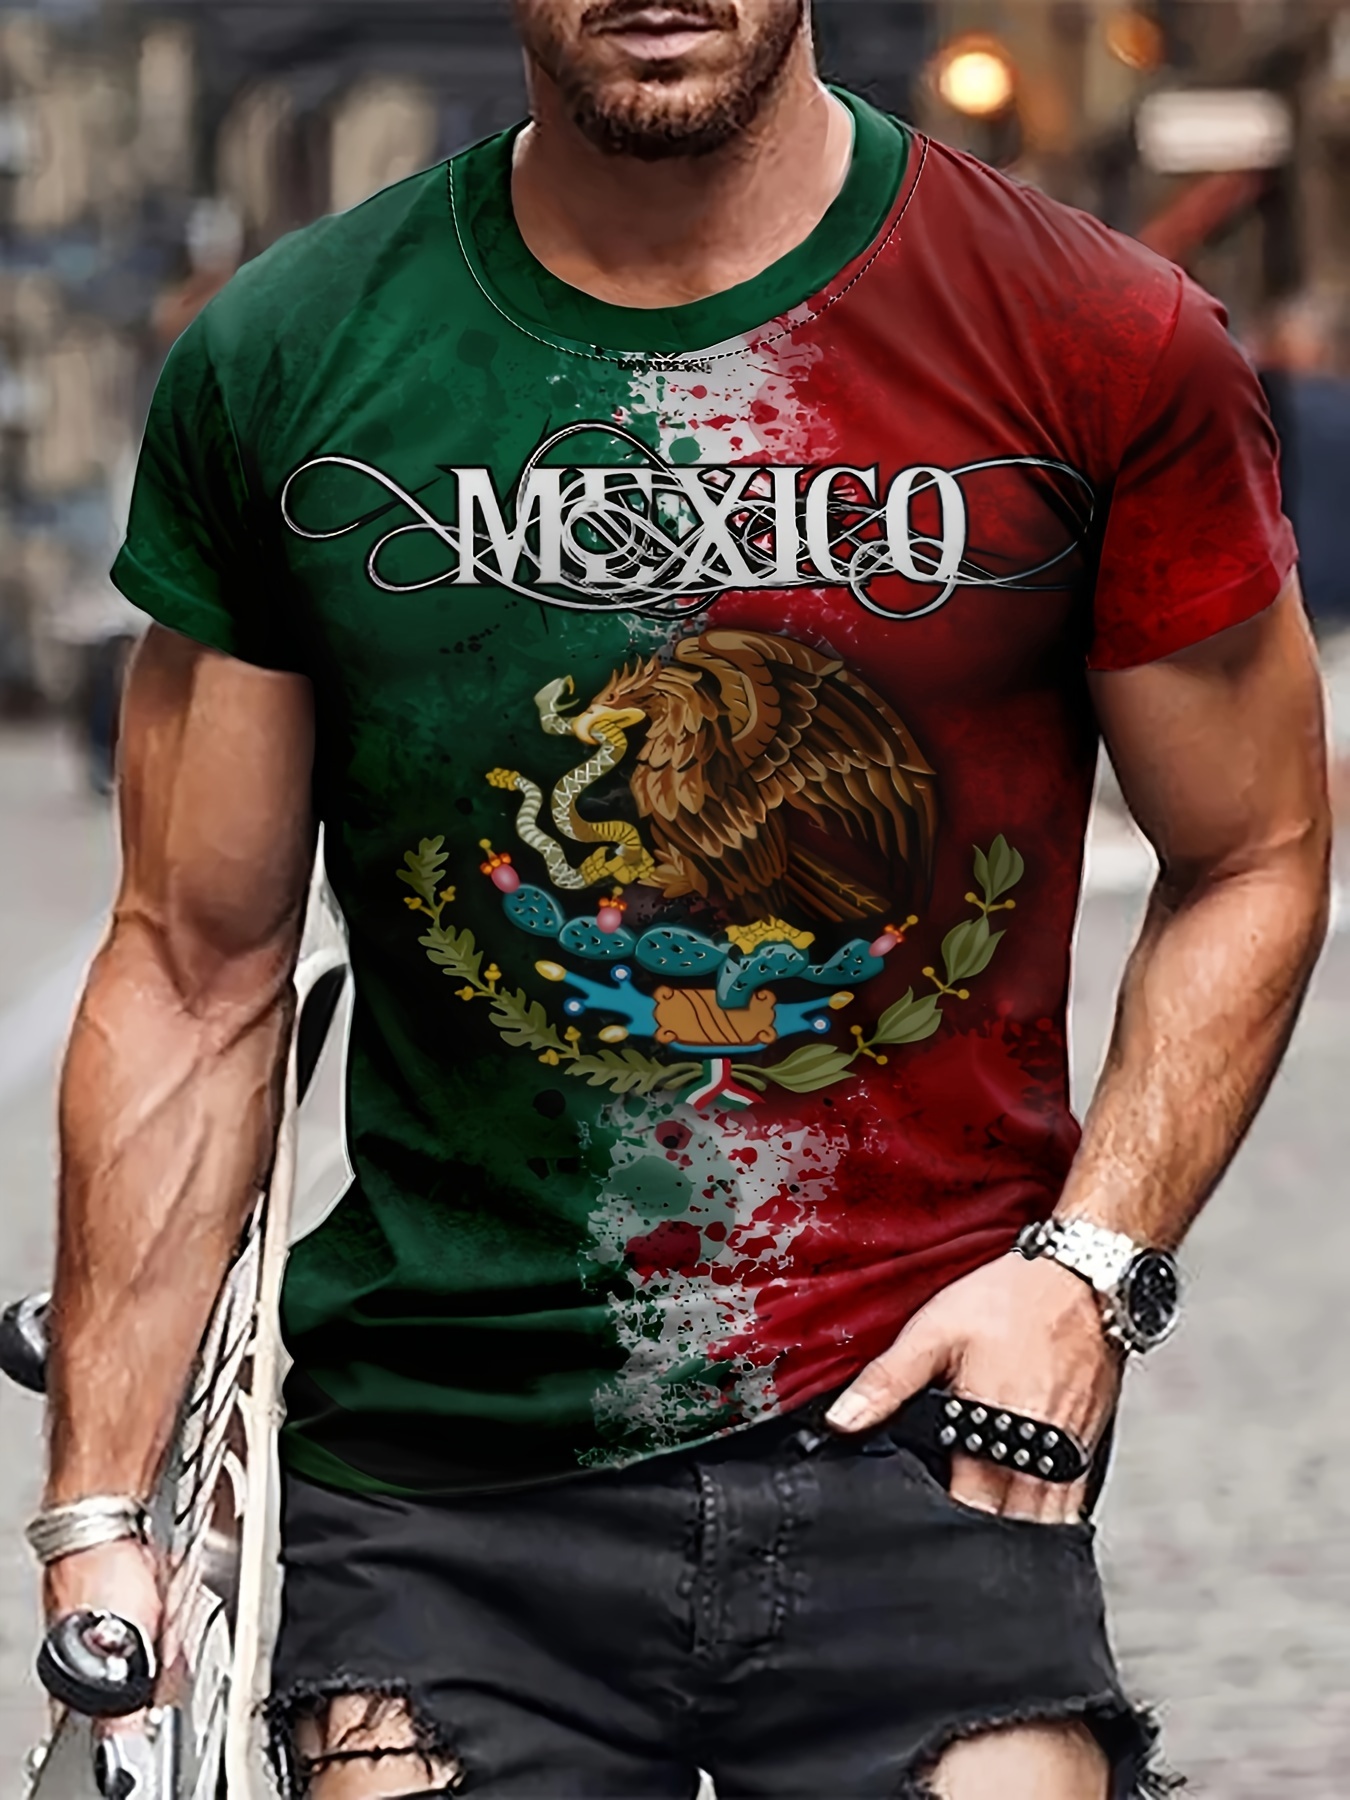 Camisas Fajas - Temu Mexico